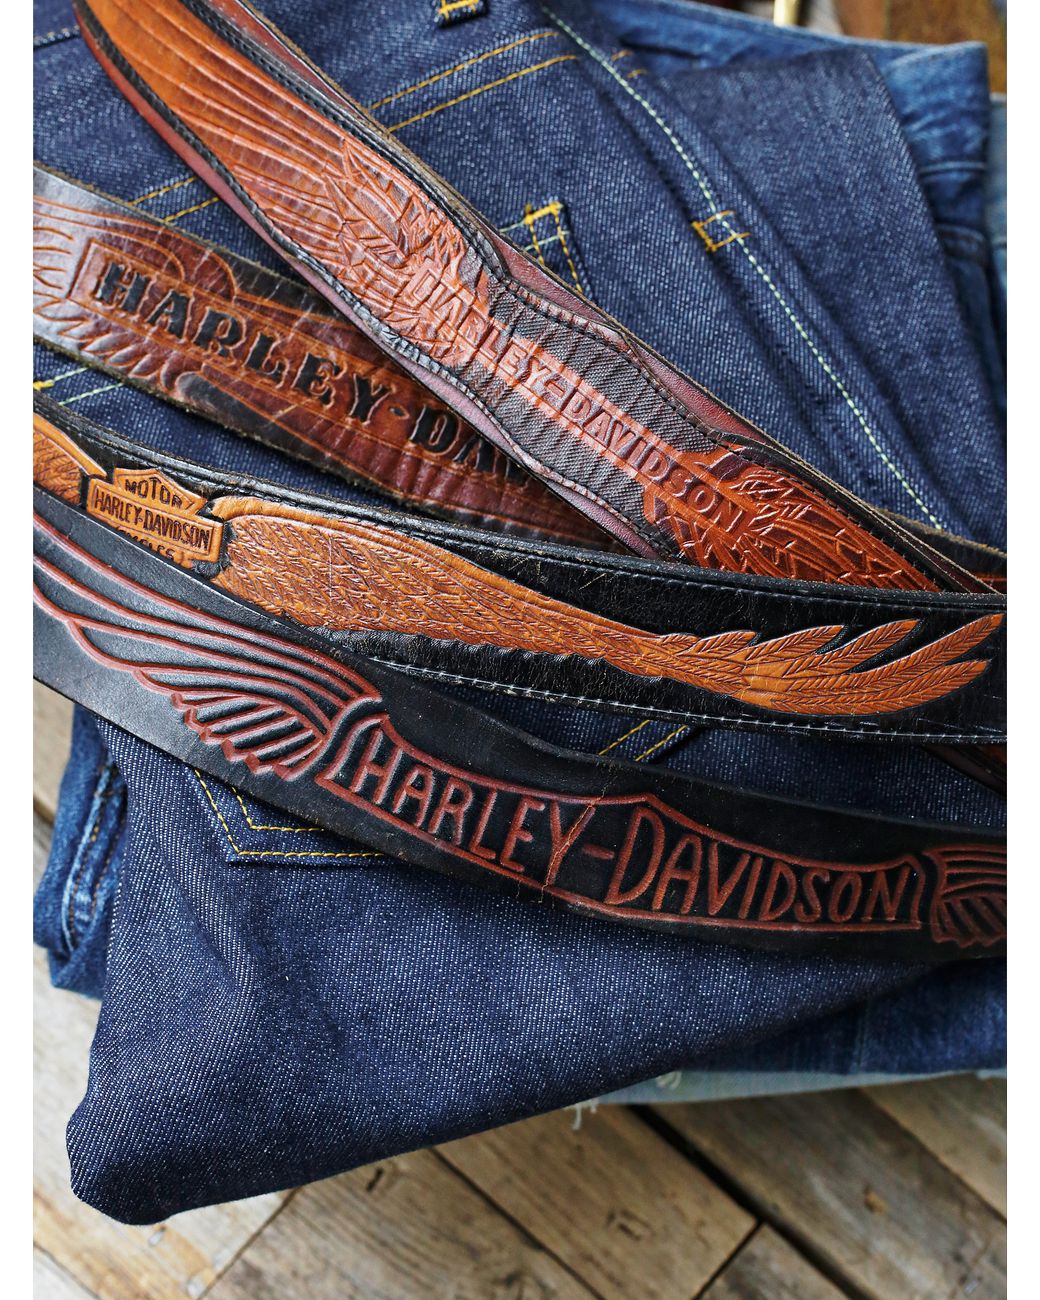 Harley-Davidson Men's Free Rein American Flag Leather Belt - Brown (32),  Harley Davidson 